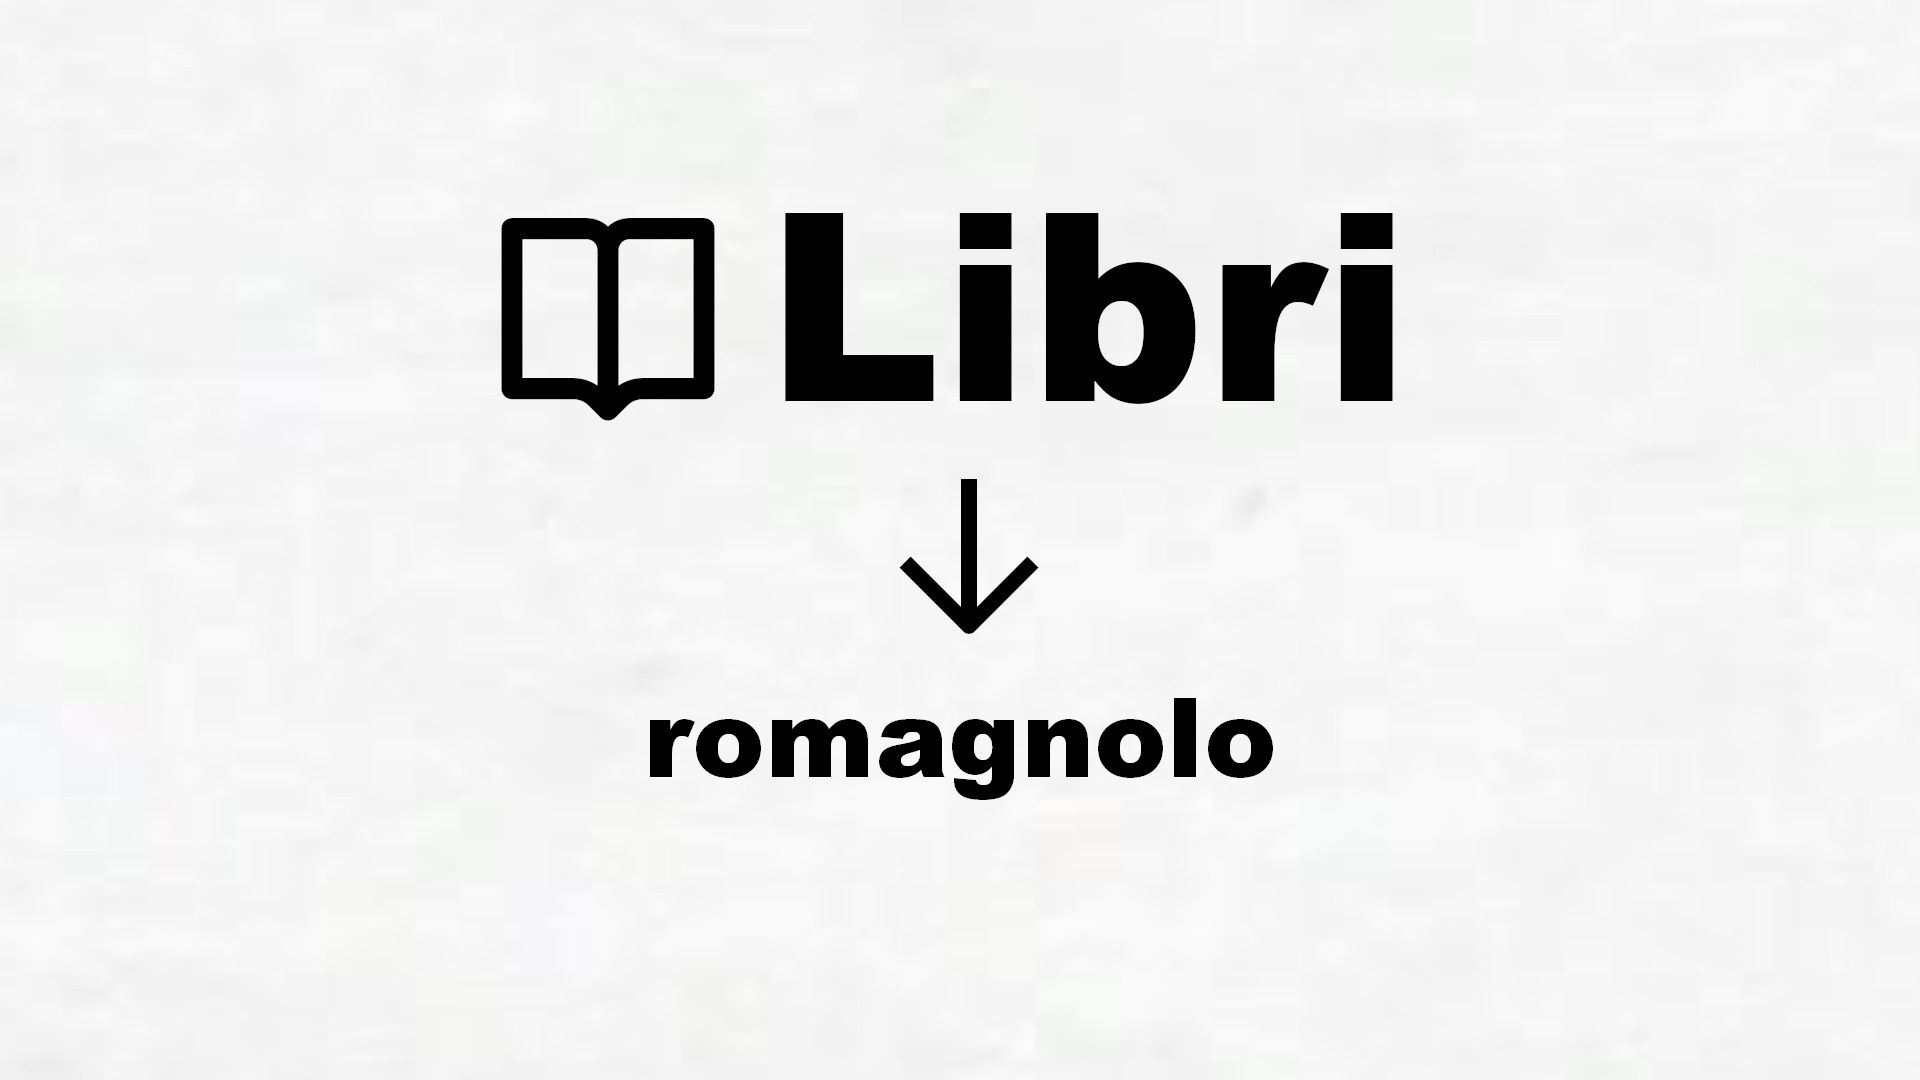 Dizionario romagnolo